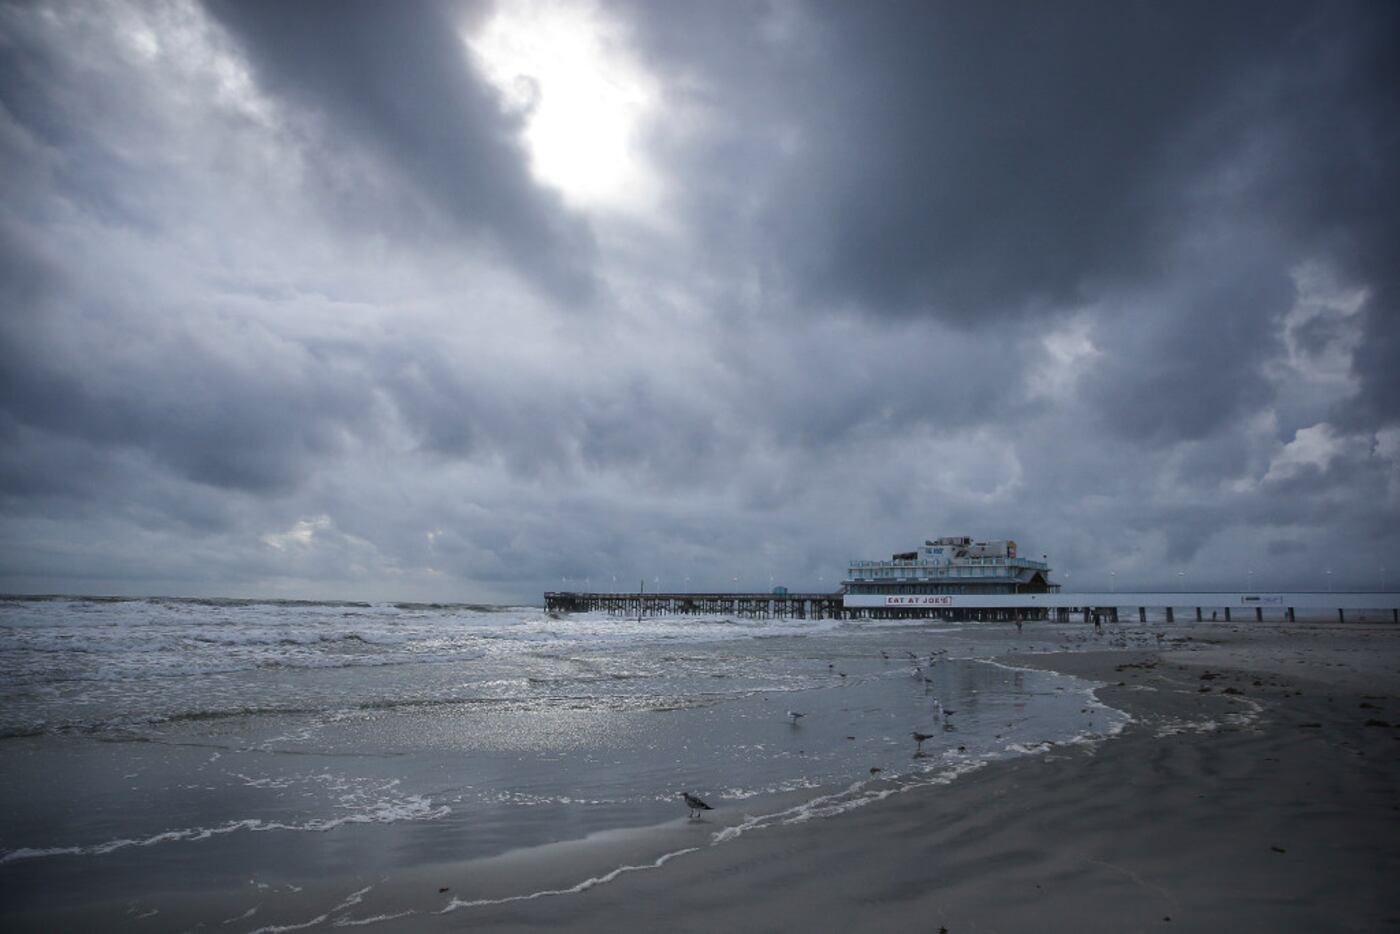 Clouds cover the sky over the beach near the Daytona Beach Boardwalk and Pier on Thursday.